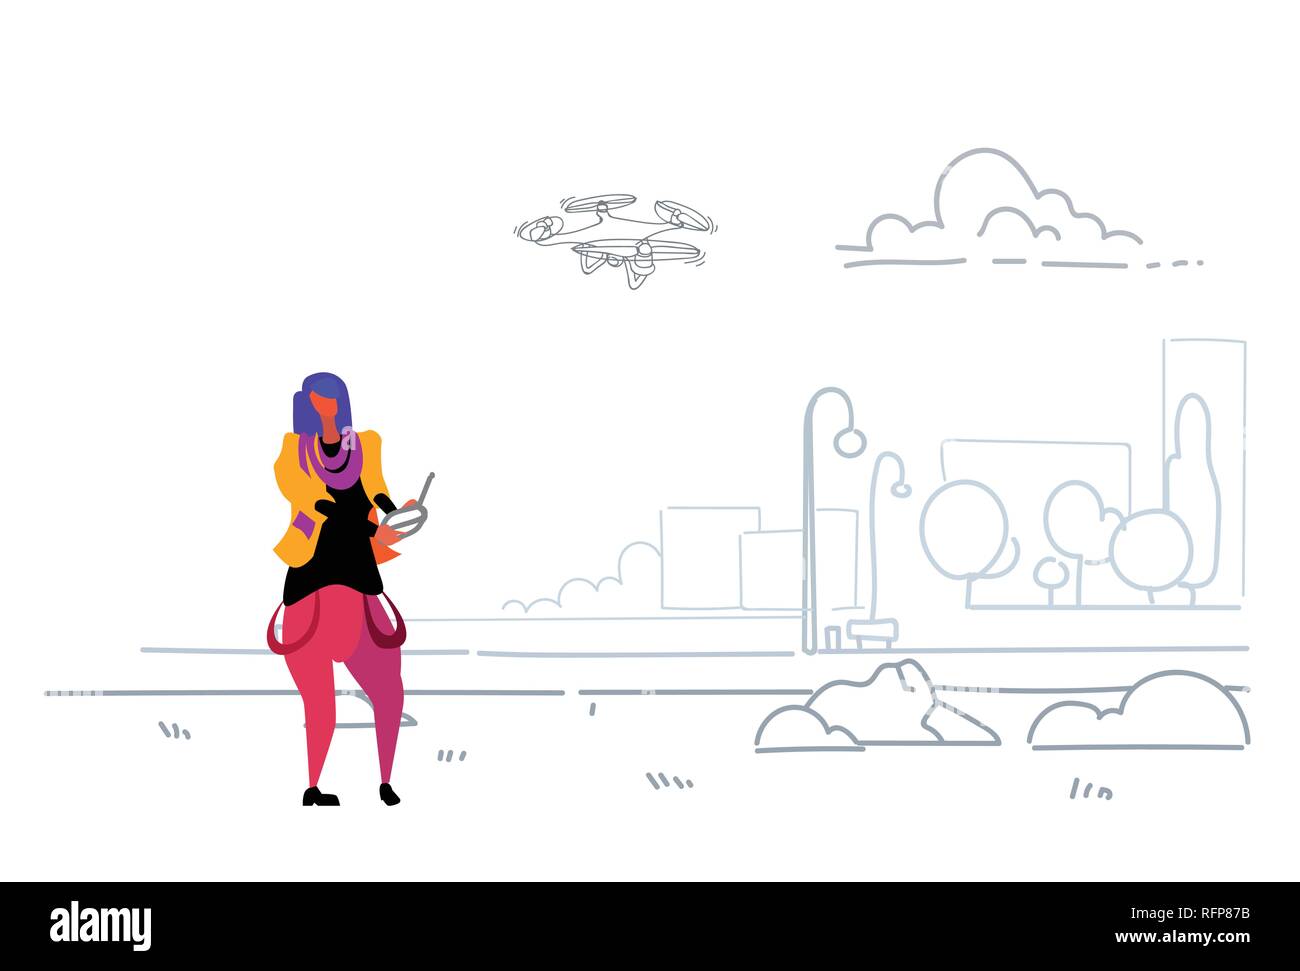 Femme à l'aide de la télécommande antenne jouant drone copter ville moderne parc urbain casual girl flying quadrocopter exploitation quadcopter croquis extérieur horizontal doodle Illustration de Vecteur